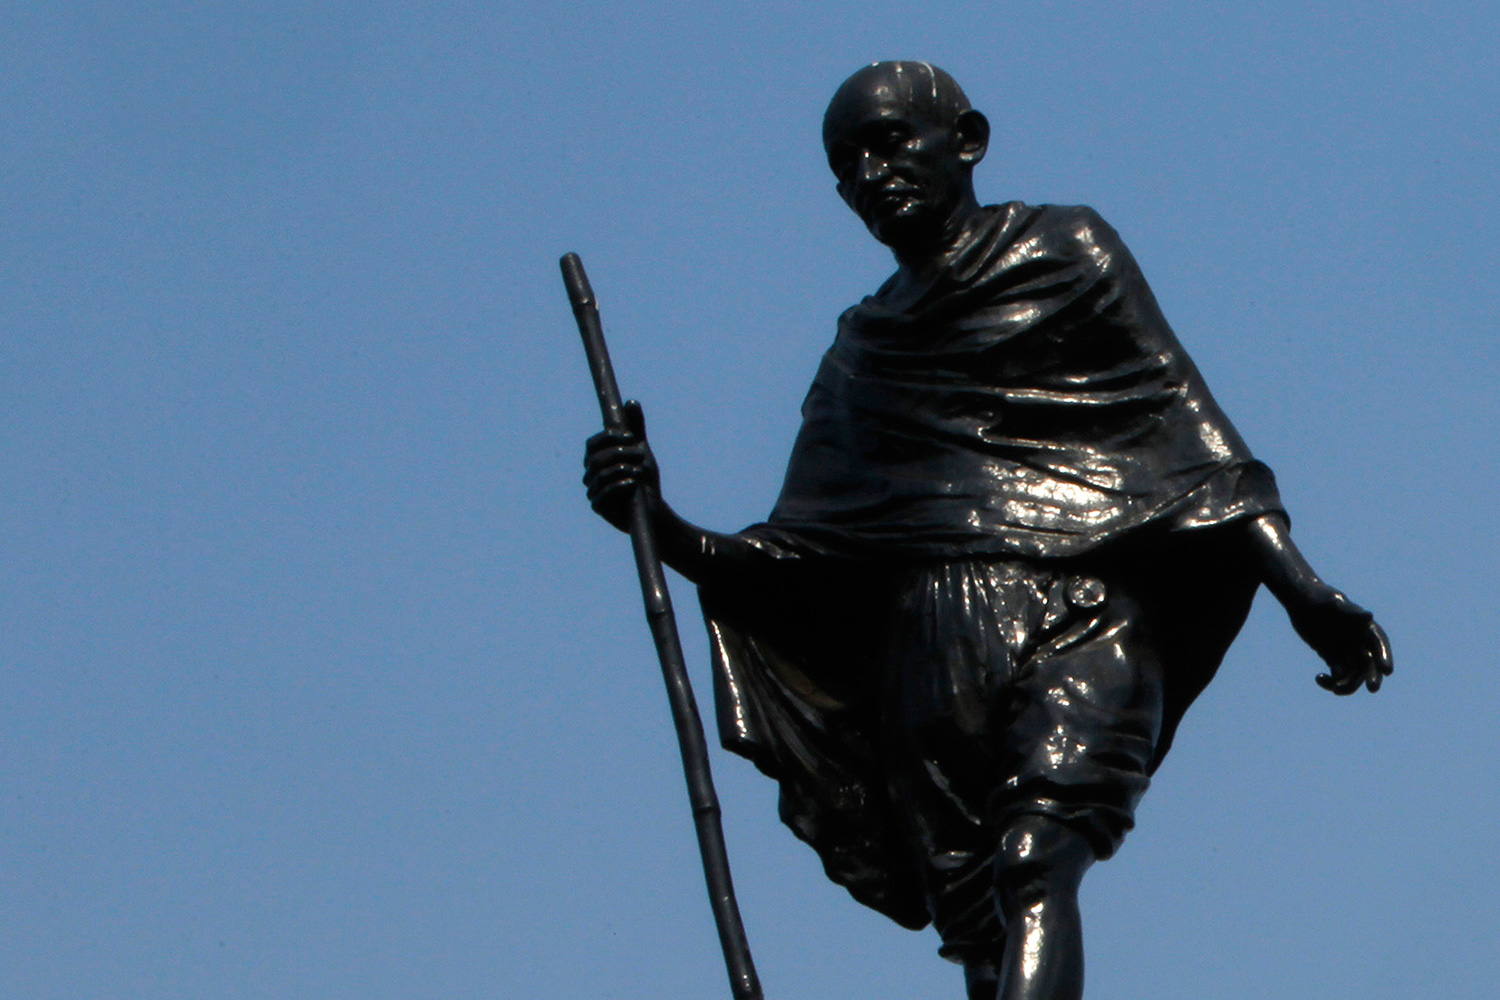 Intelectuales africanos reclaman retirar una estatua de Mahatma Gandhi por considerarle racista